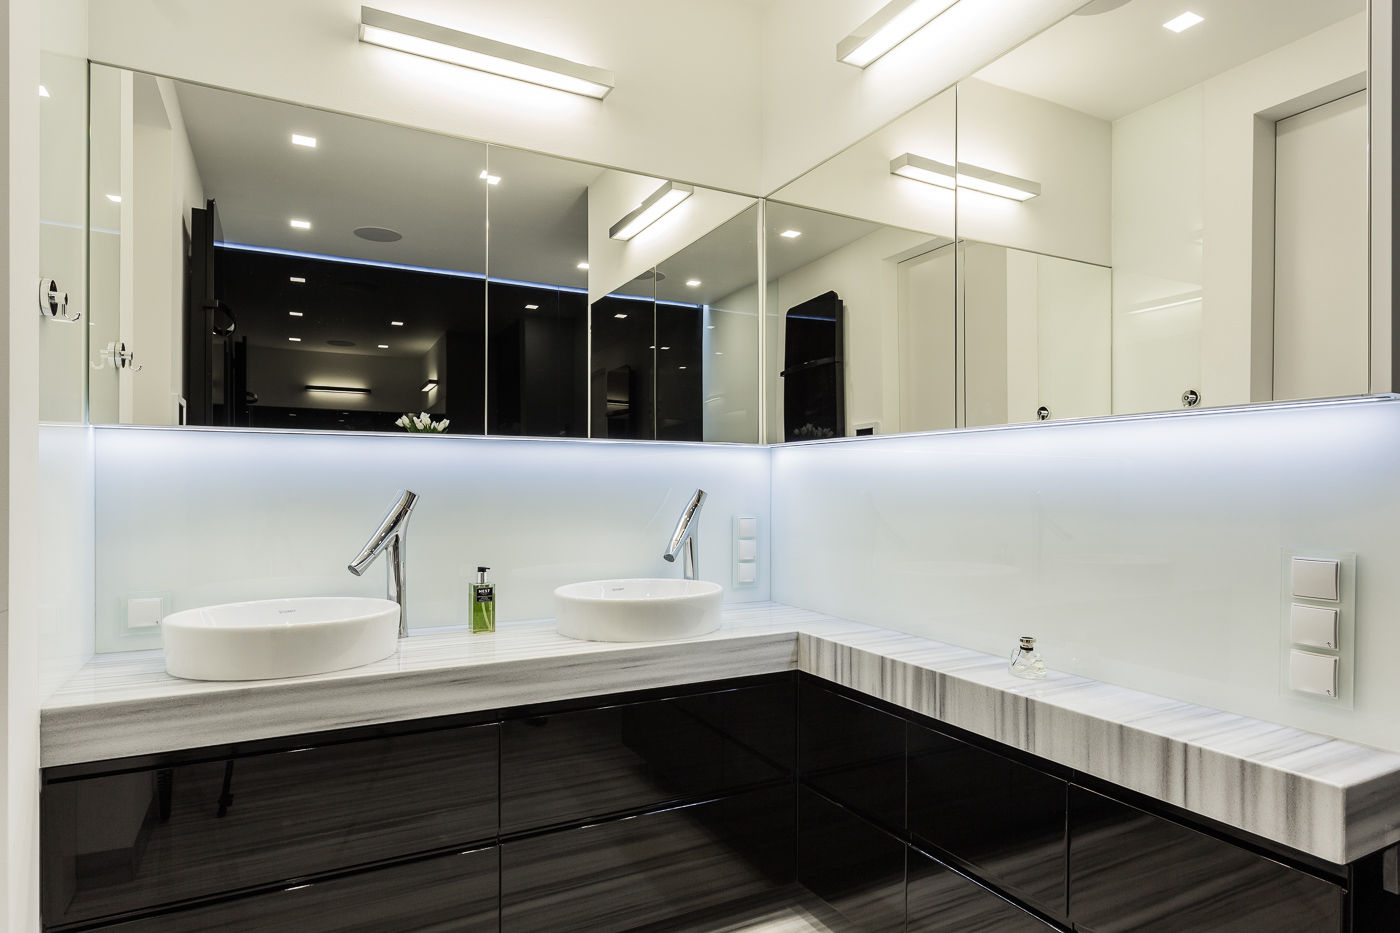 Mieszkanie na warszawskiej Ochocie, Modify- Architektura Wnętrz Modify- Architektura Wnętrz Modern bathroom Marble